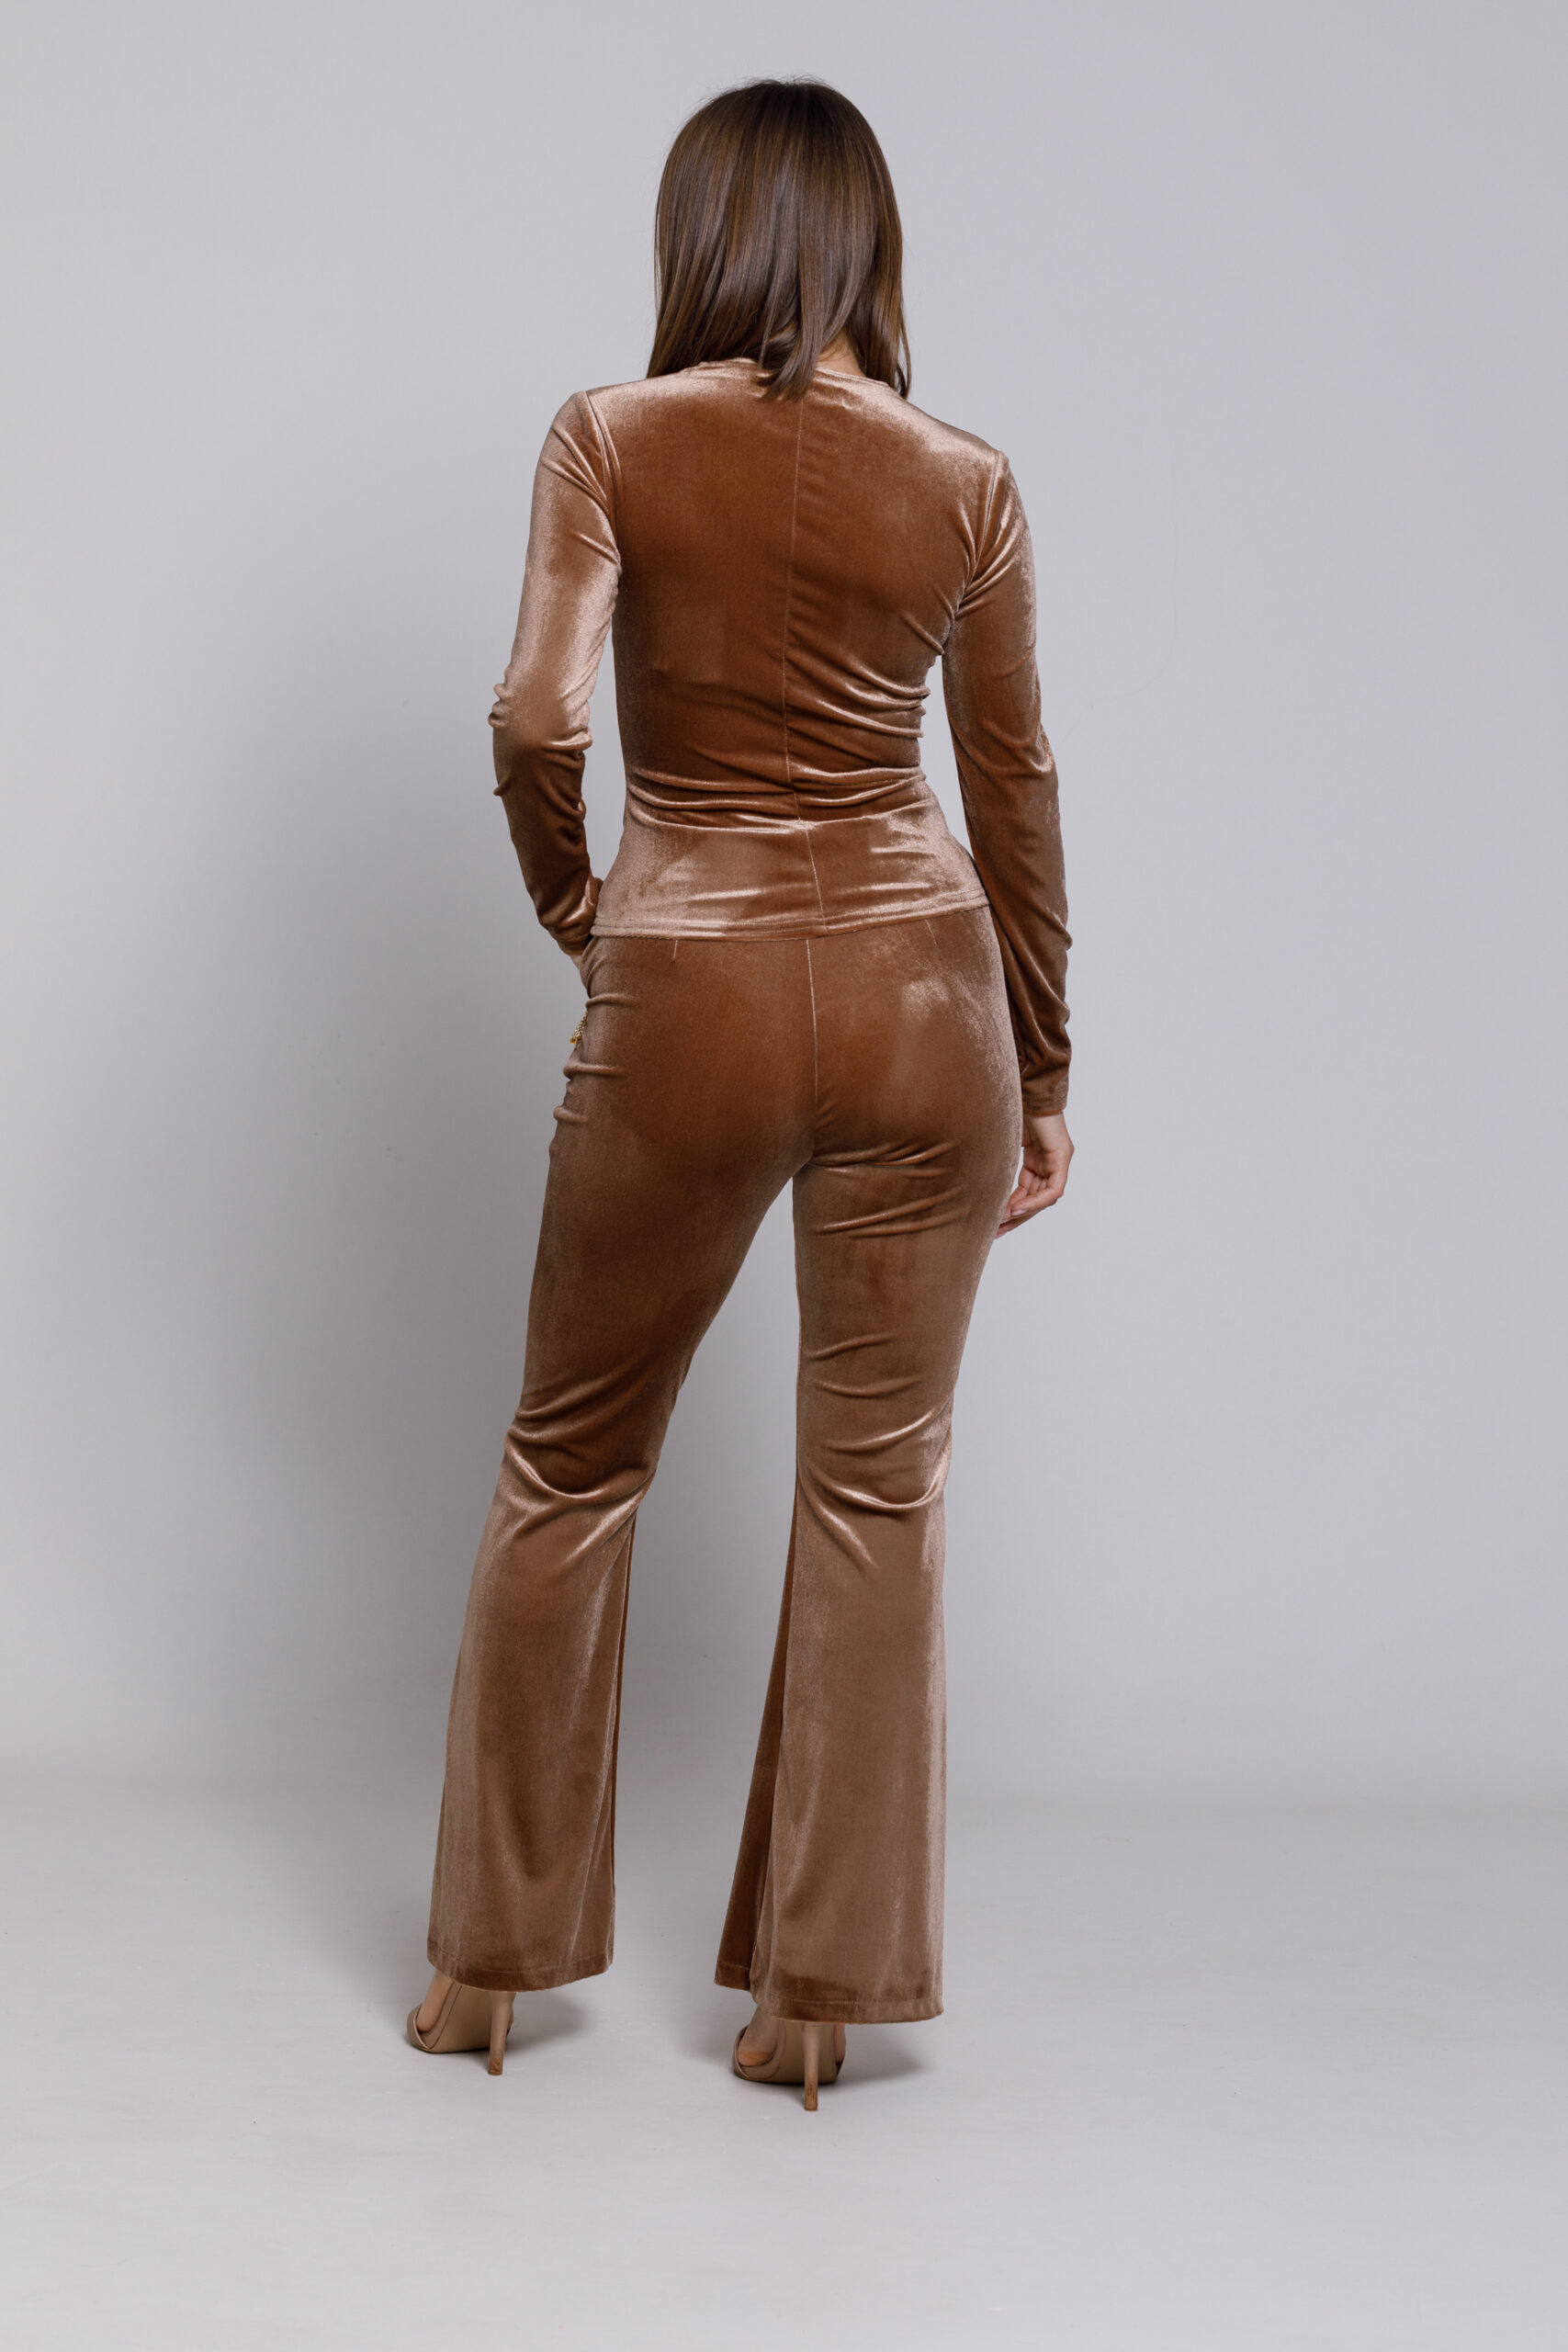 Pantalon SAM din catifea cappuccino. Materiale naturale, design unicat, cu broderie si aplicatii handmade